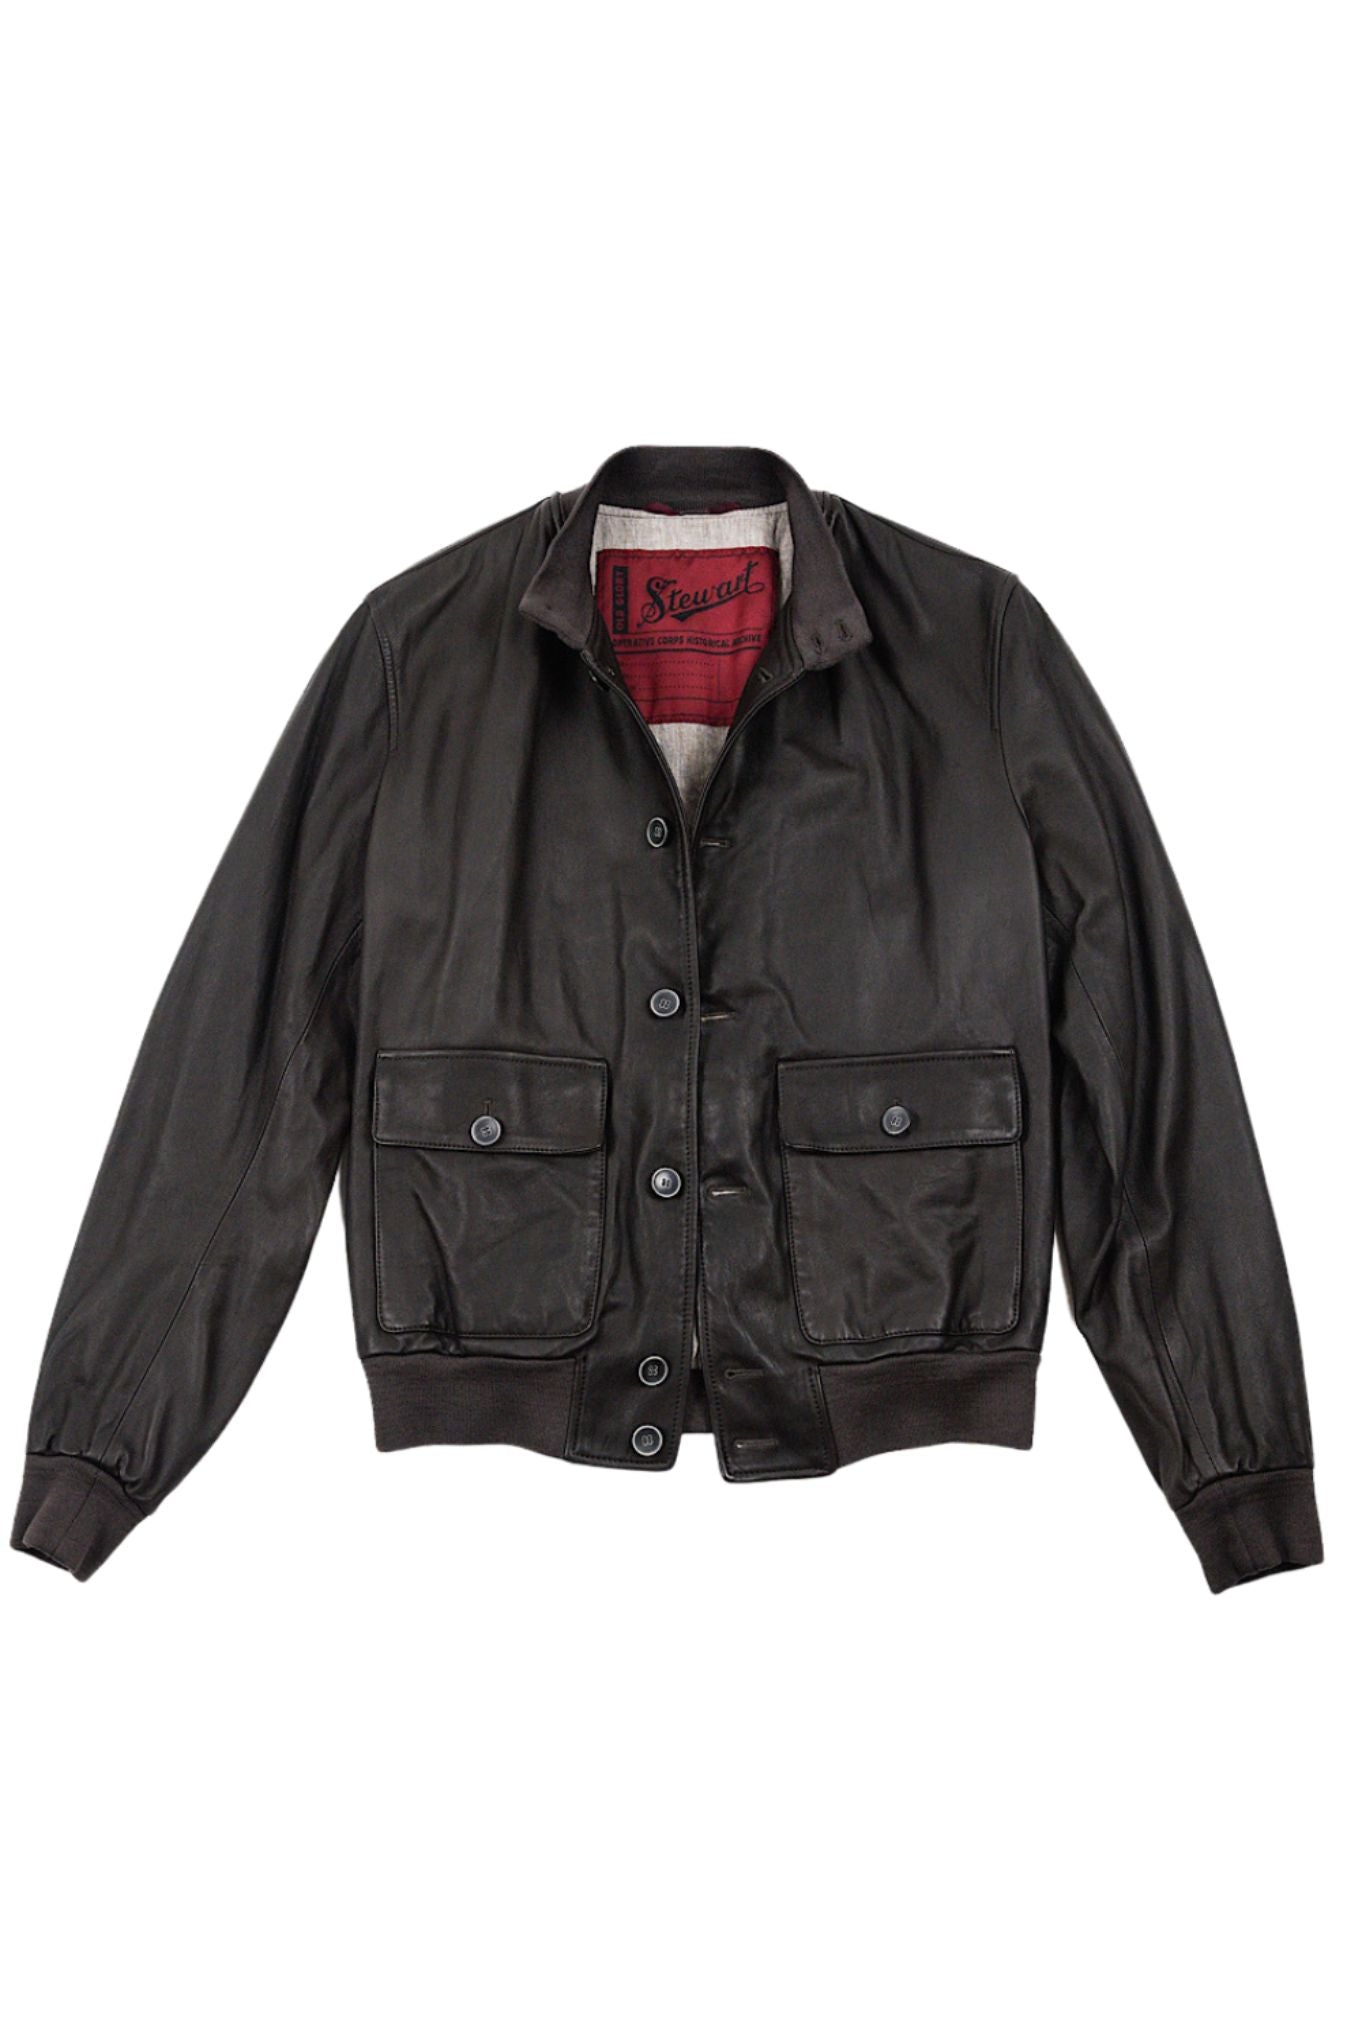 STEWART Random dark brown leather jacket